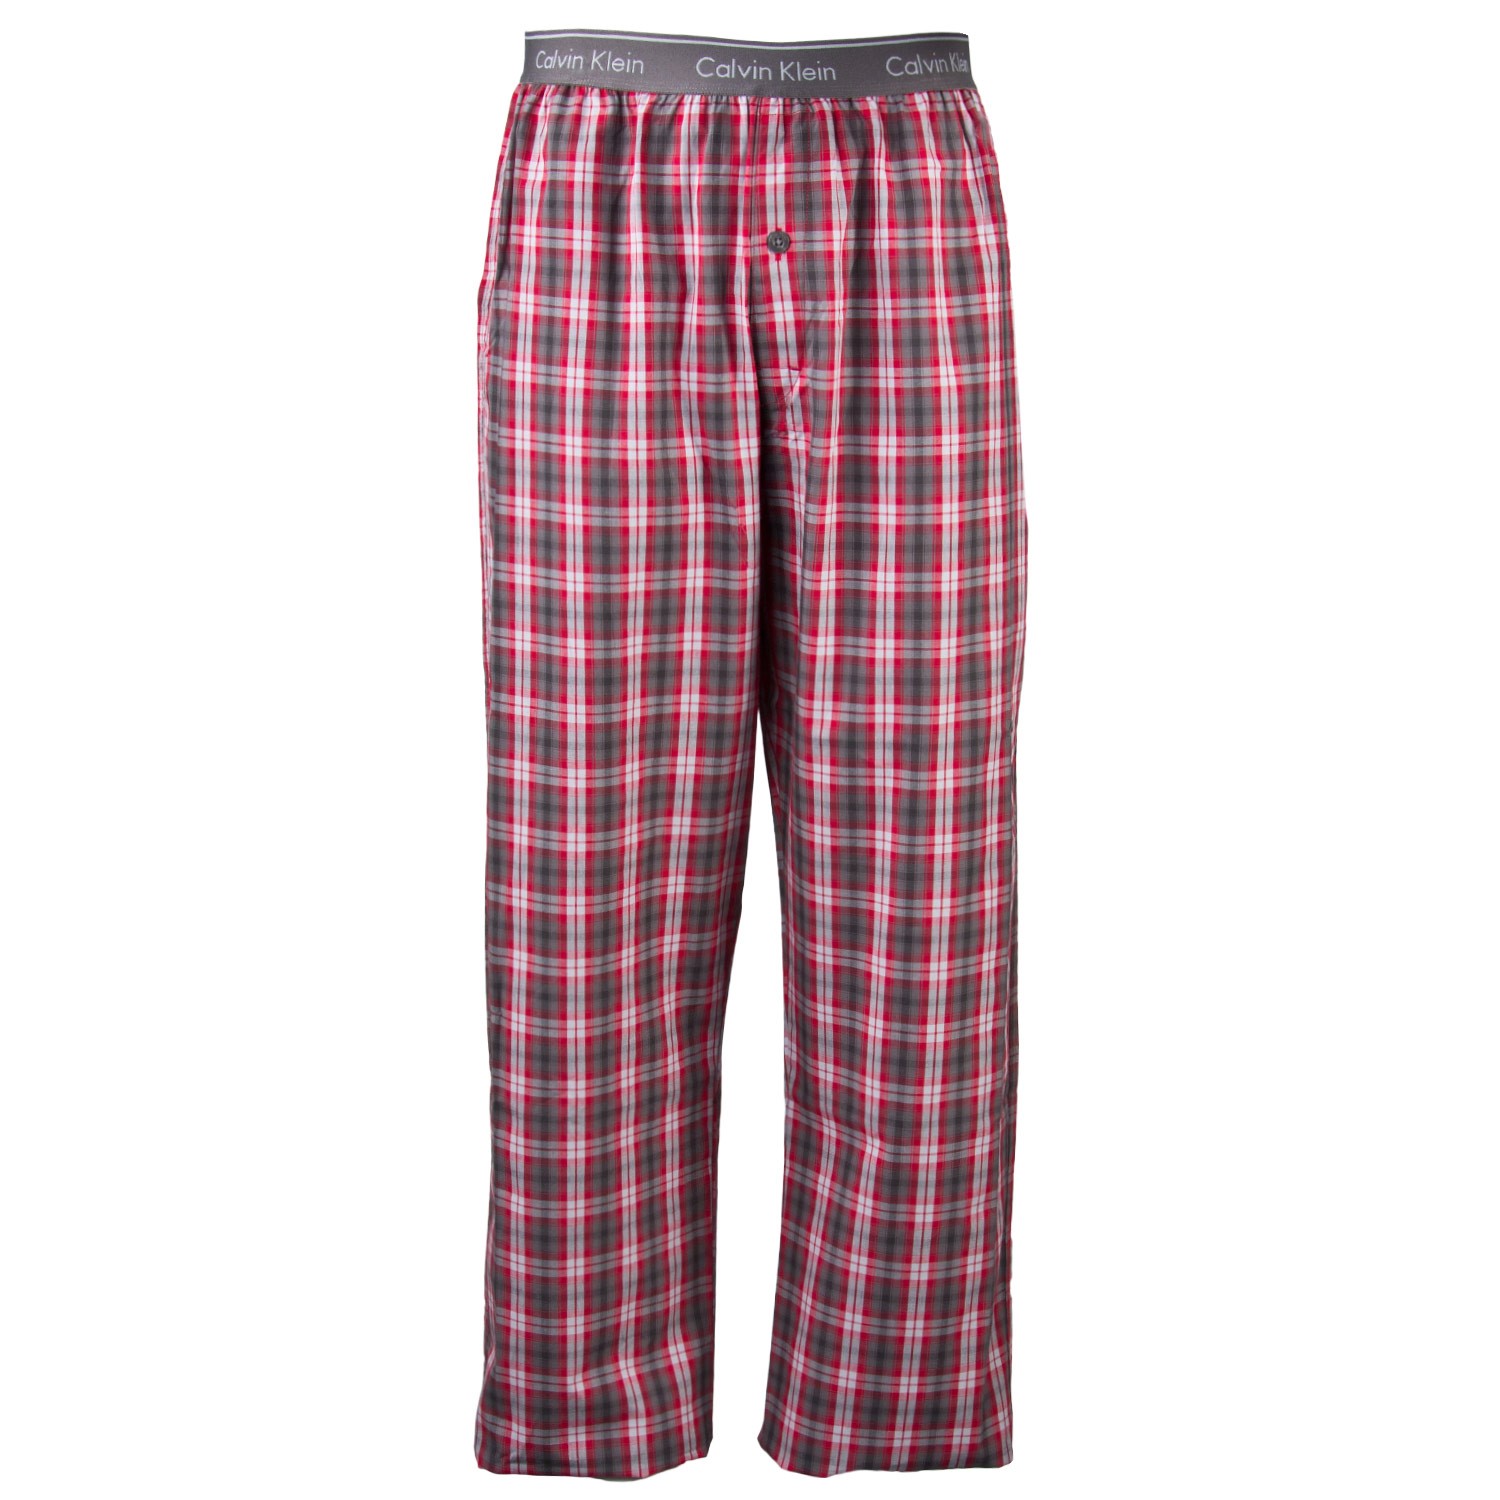 Calvin Klein Pyjamas Pant Noah Plaid